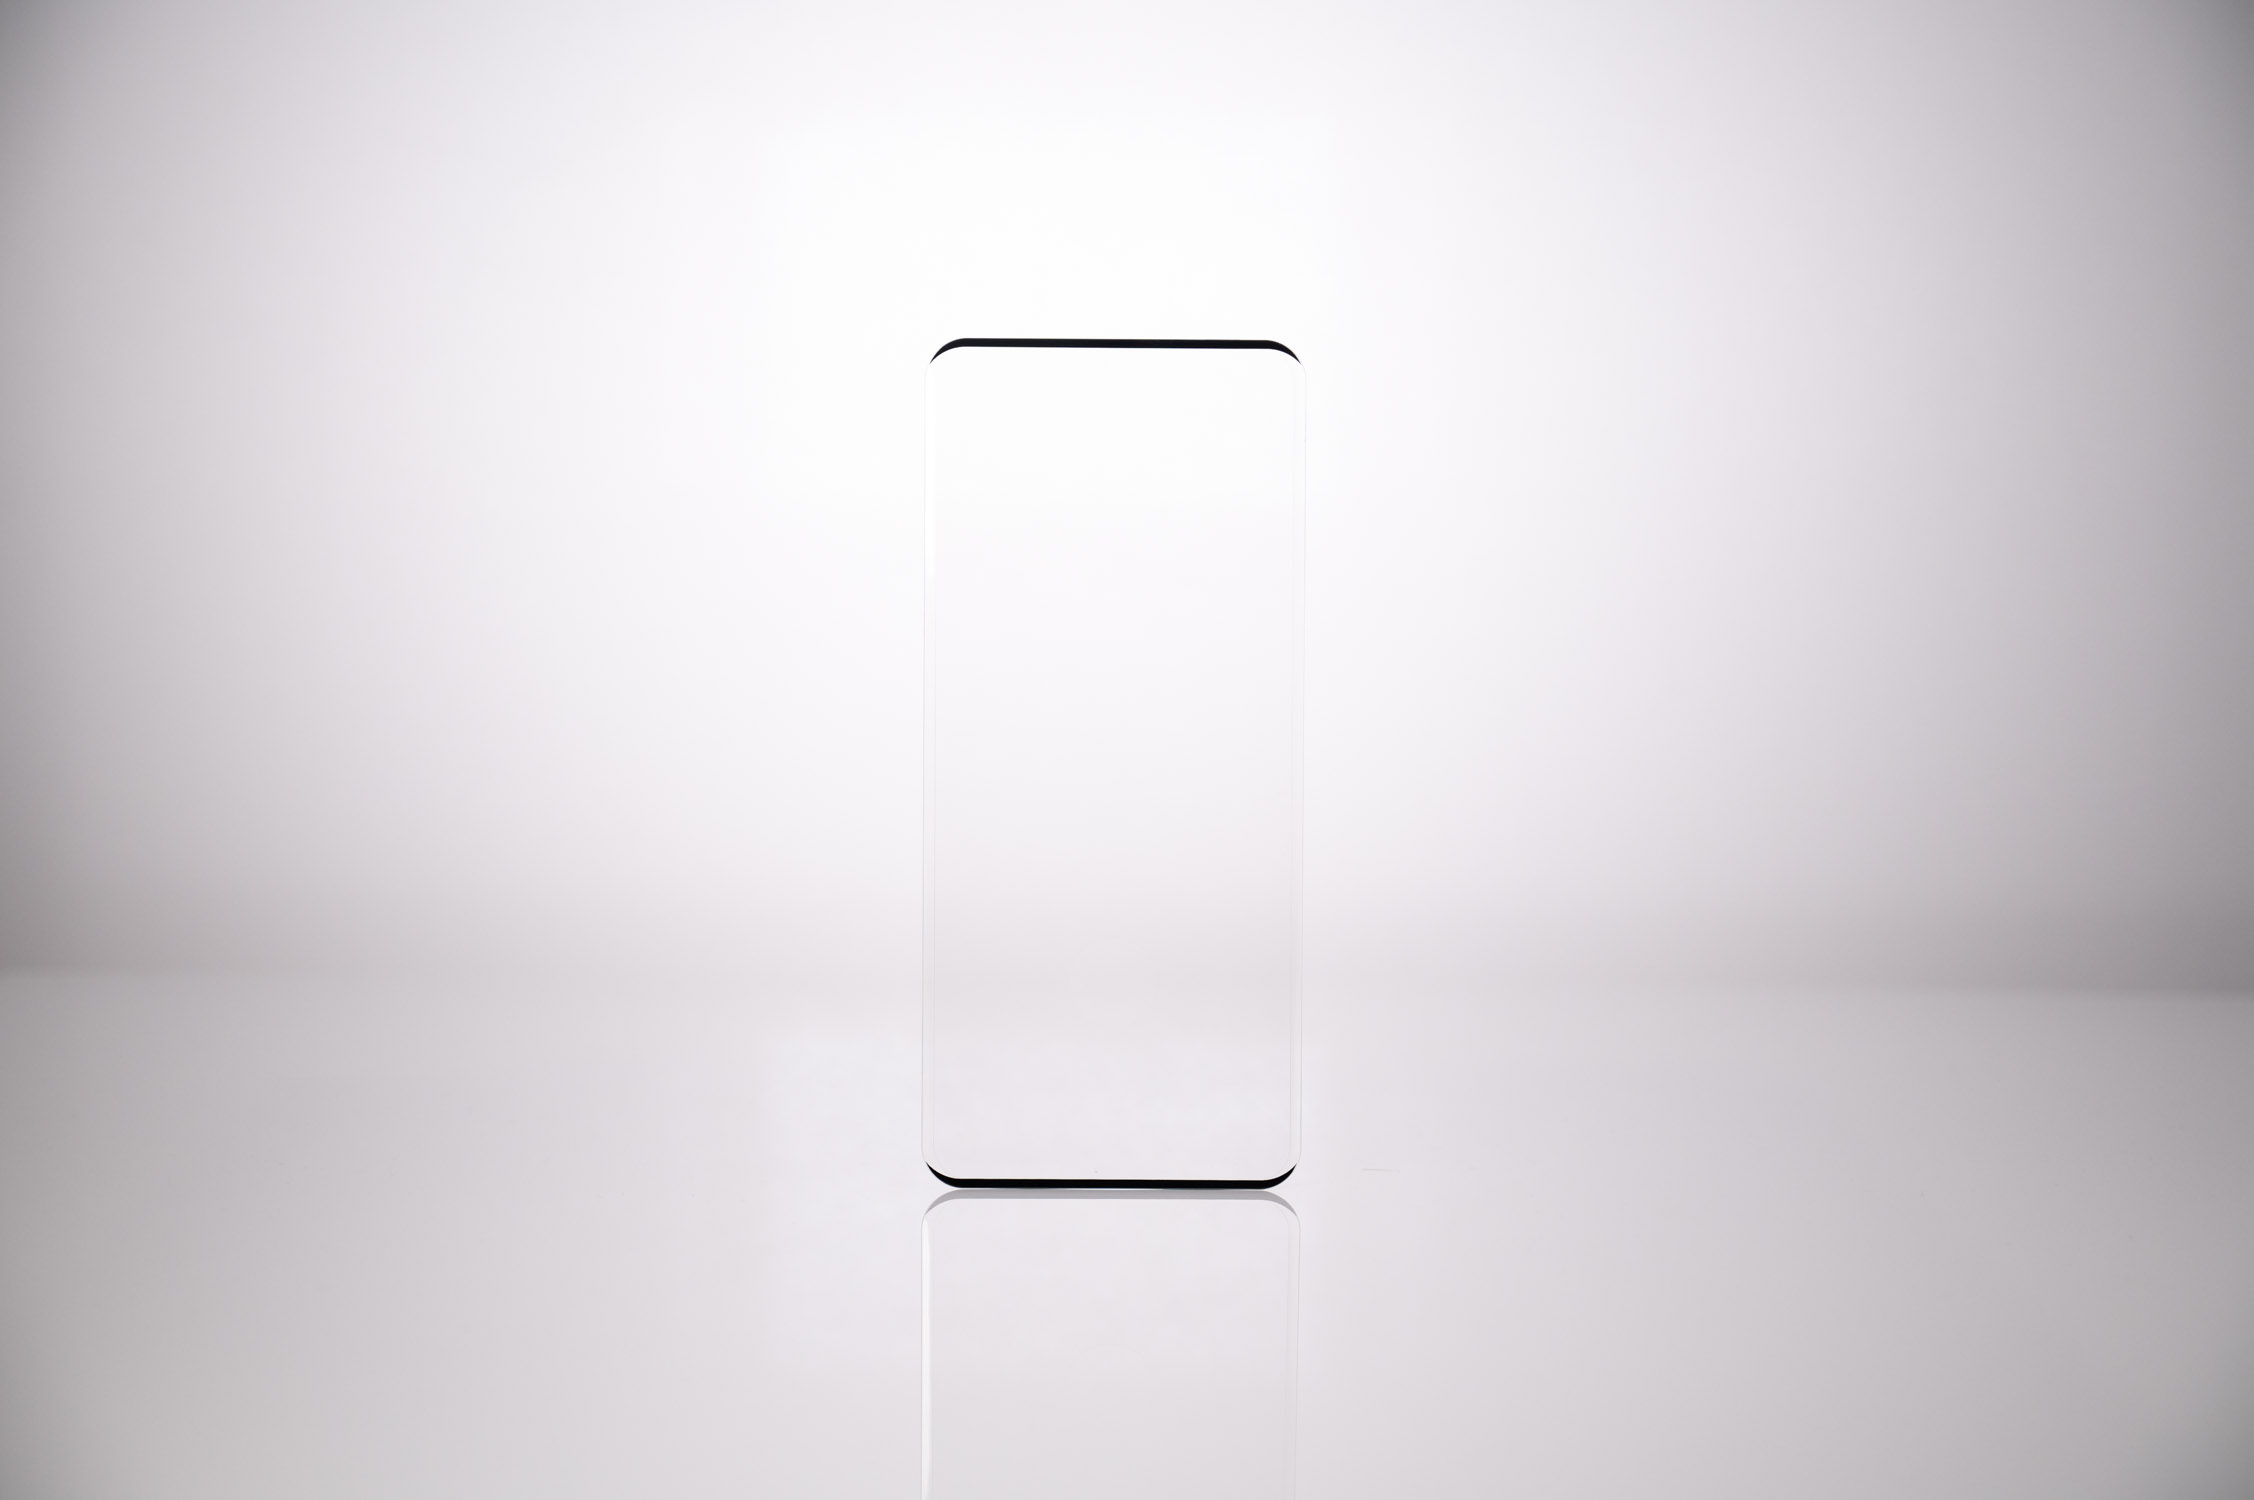 FOLIE STICLA  Spacer pentru Samsung Galaxy S21 Ultra, grosime 0.3mm, acoperire totala ecran, strat special anti-ulei si anti-amprenta, Tempered Glass "SPPG-SM-GX-S21U-TG" thumb